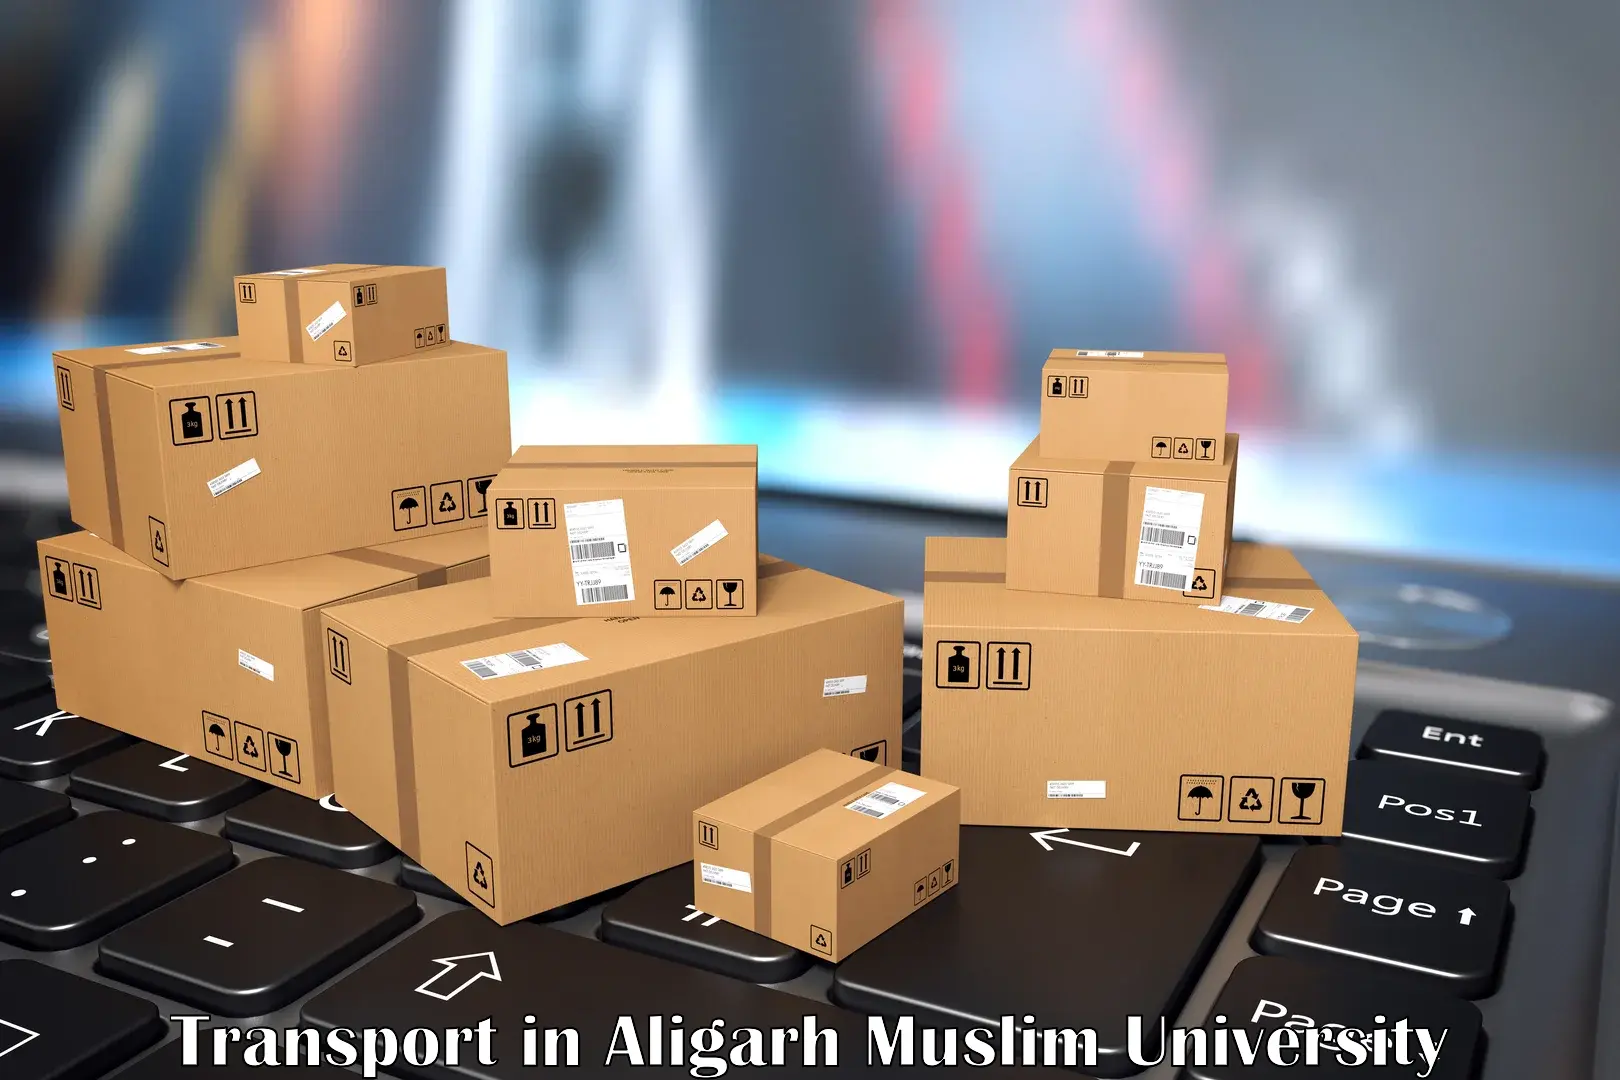 International cargo transportation services in Aligarh Muslim University